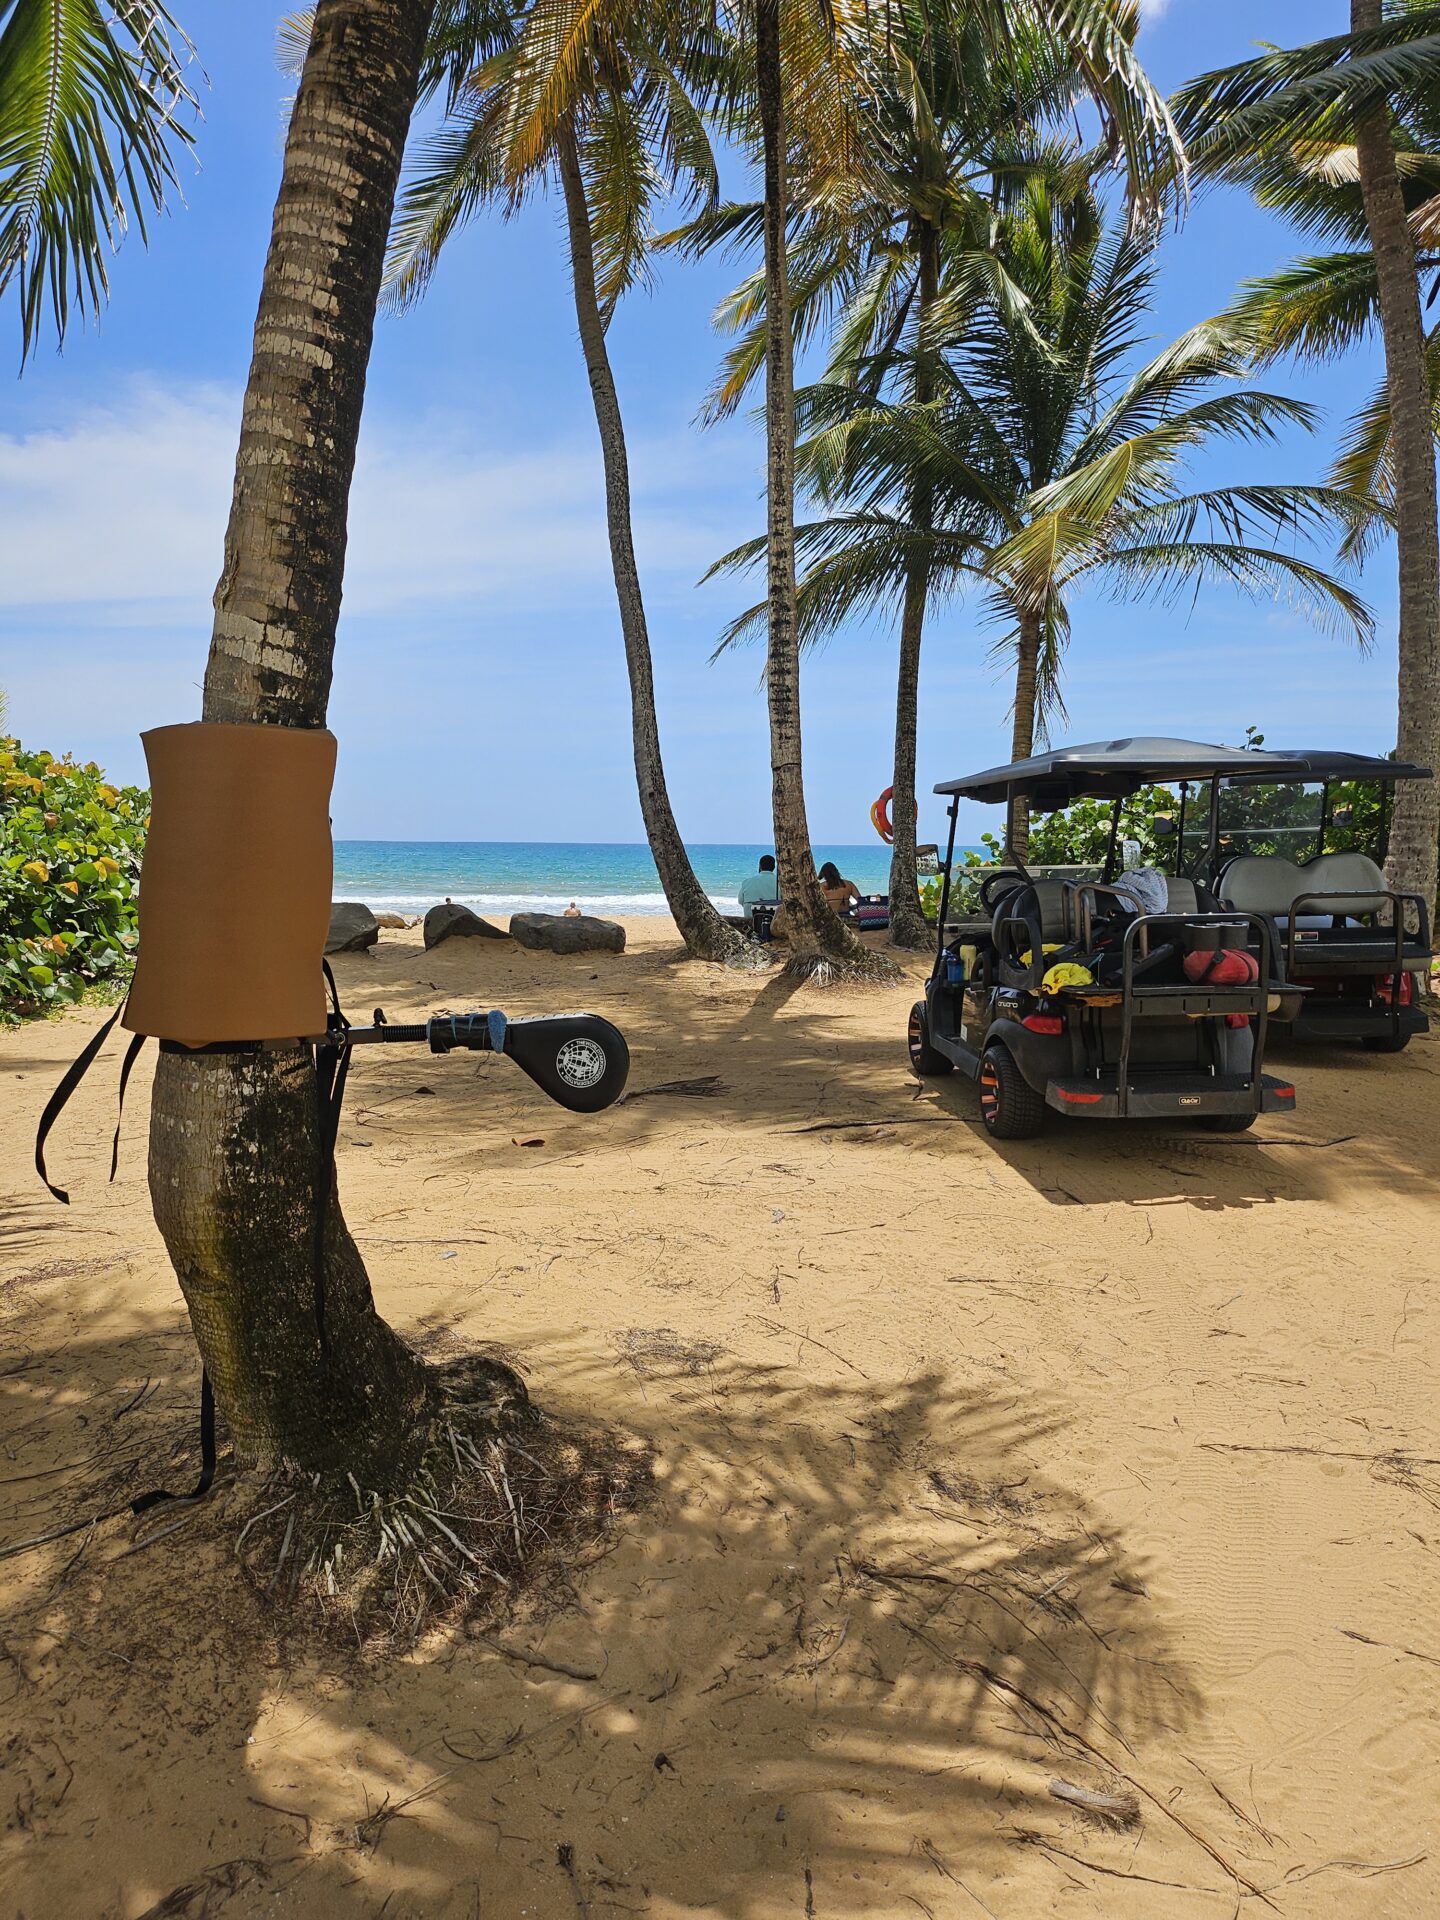 golf carts on a beach